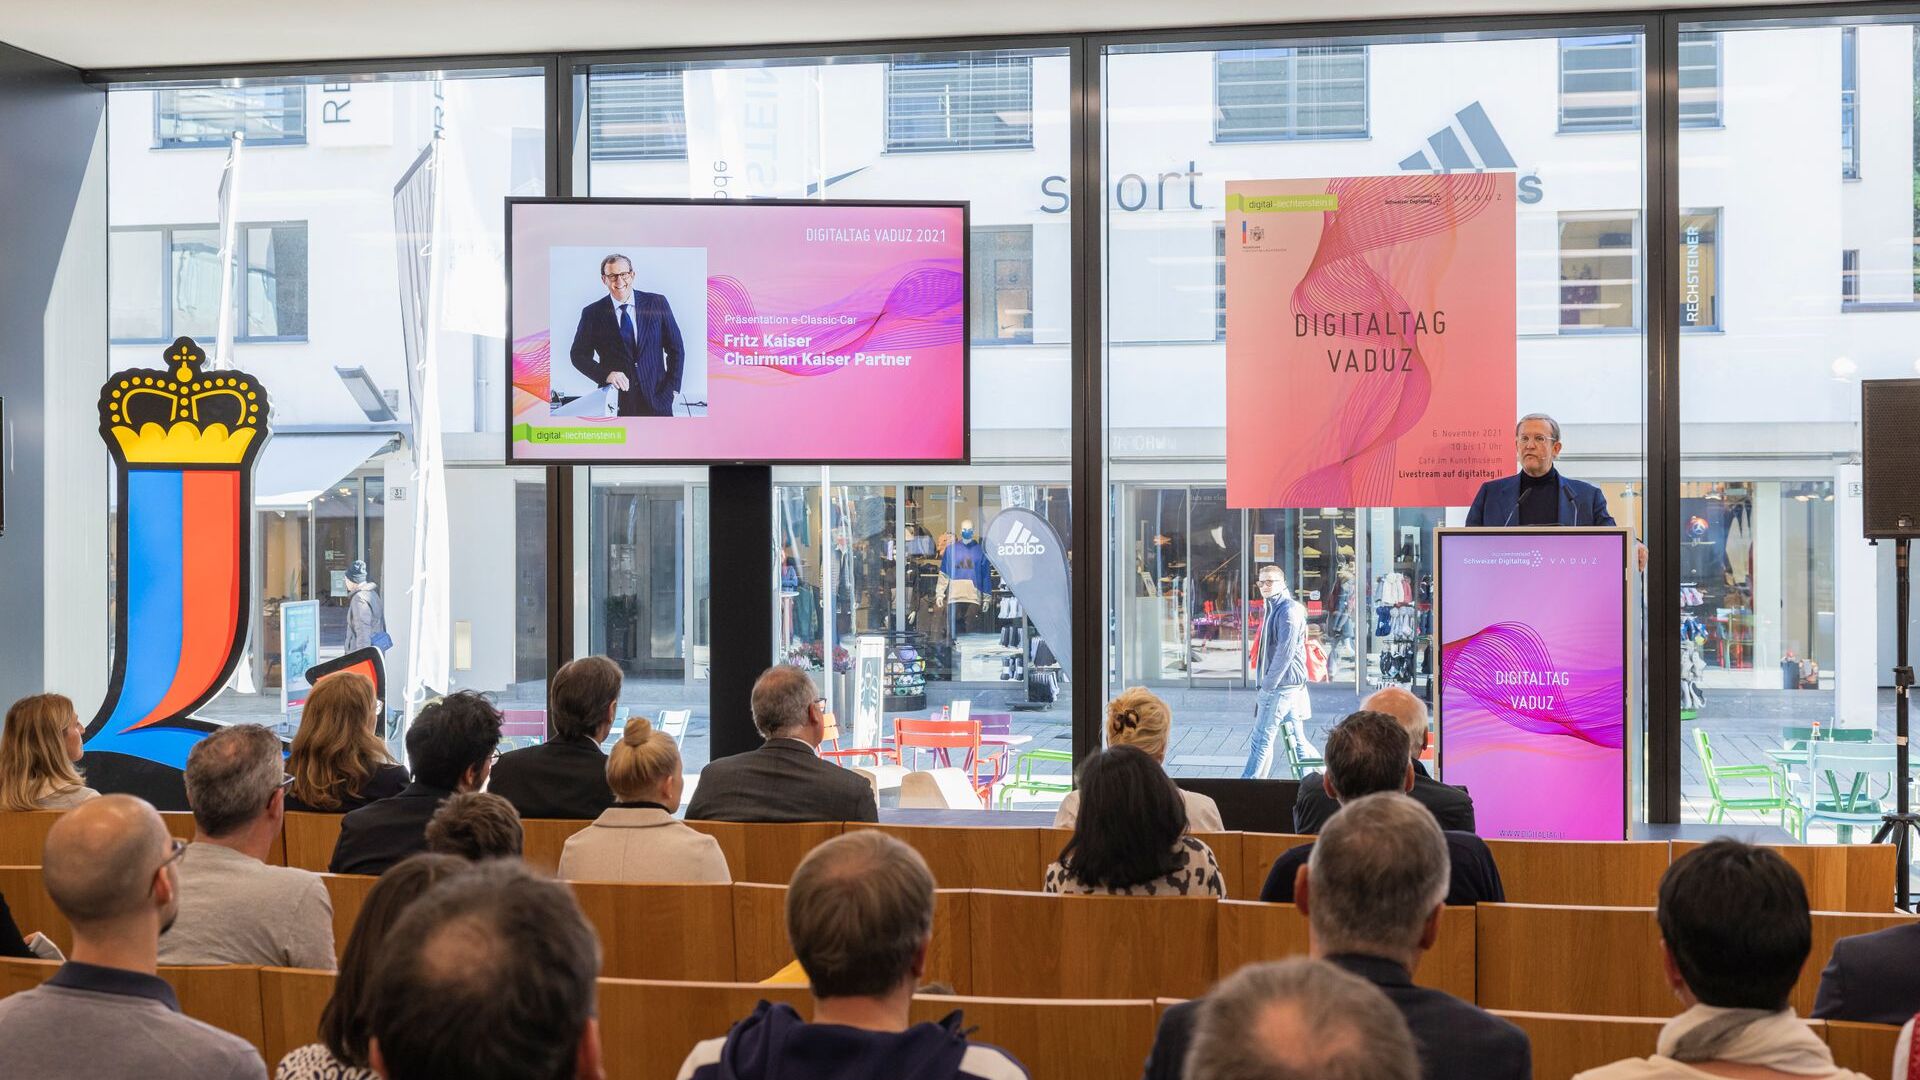 De "Digitaltag Vaduz" werd op zaterdag 6 november 2021 verwelkomd door het Kunstmuseum van de hoofdstad van het Vorstendom Liechtenstein: de toespraak van Fritz Kaiser, voorzitter en eigenaar van Kaiser Partner